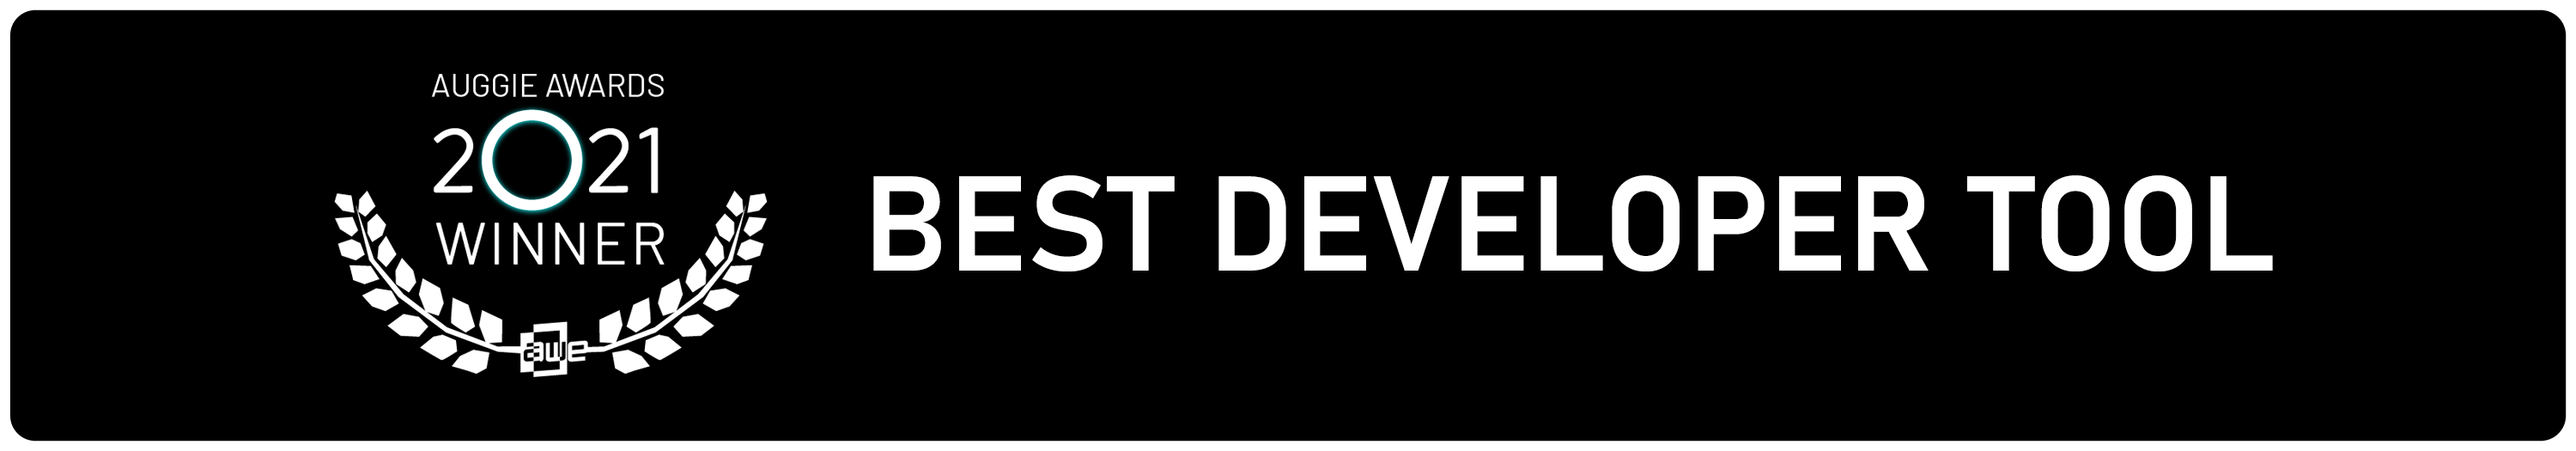 Prêmio Auggie de 2021 na categoria de Melhor Ferramenta para Desenvolvedores